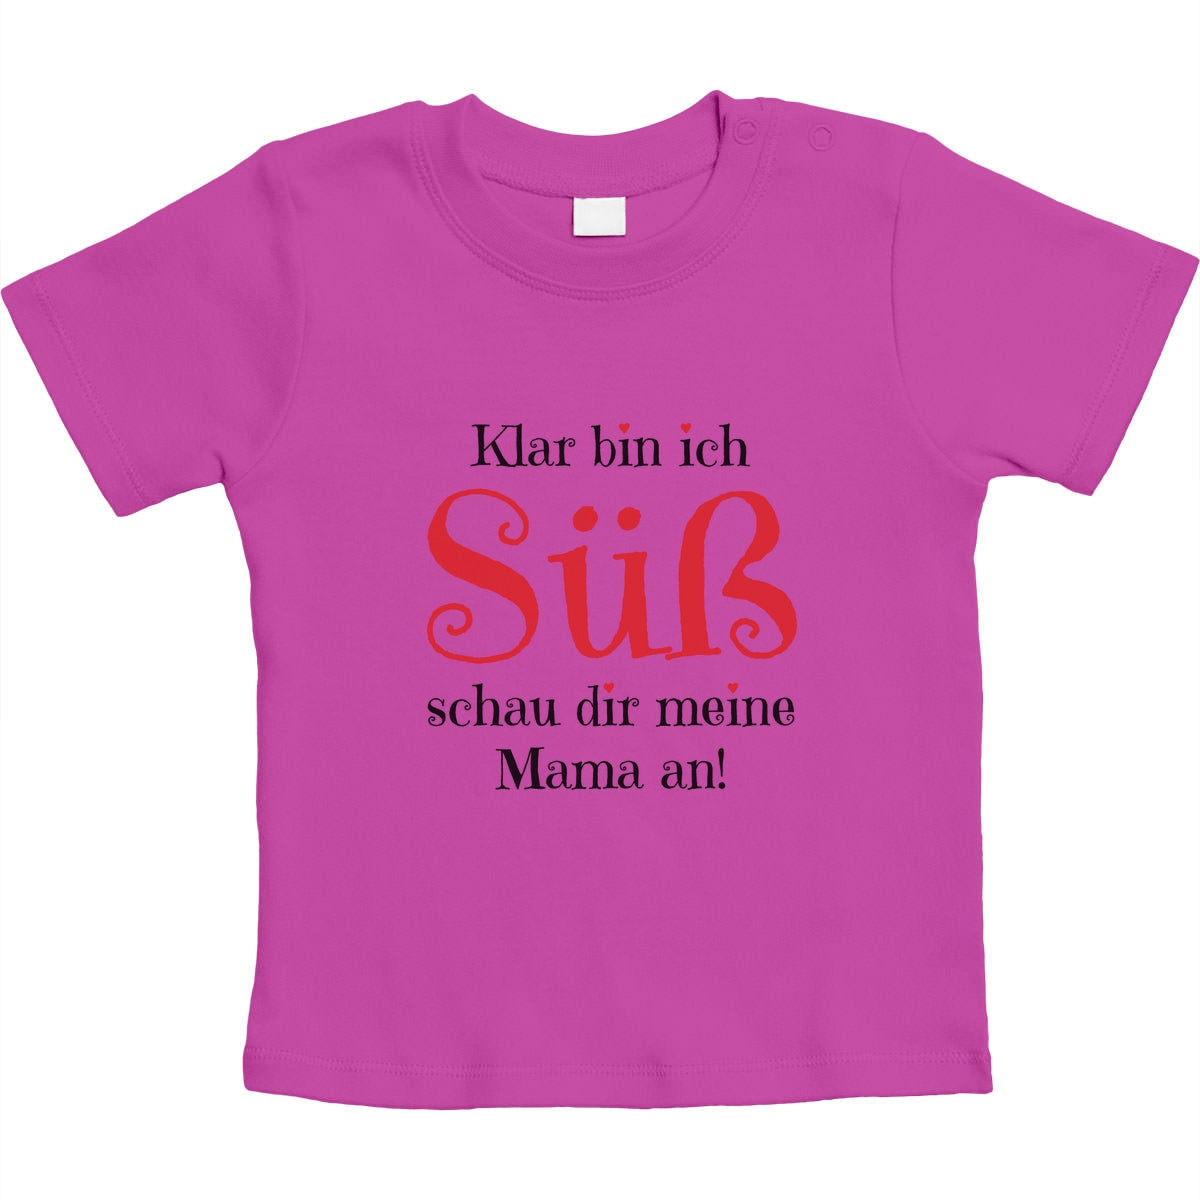 Mädchen - Klar bin ich Süß schau dir meine Mama an Unisex Baby T-Shirt Gr. 66-93